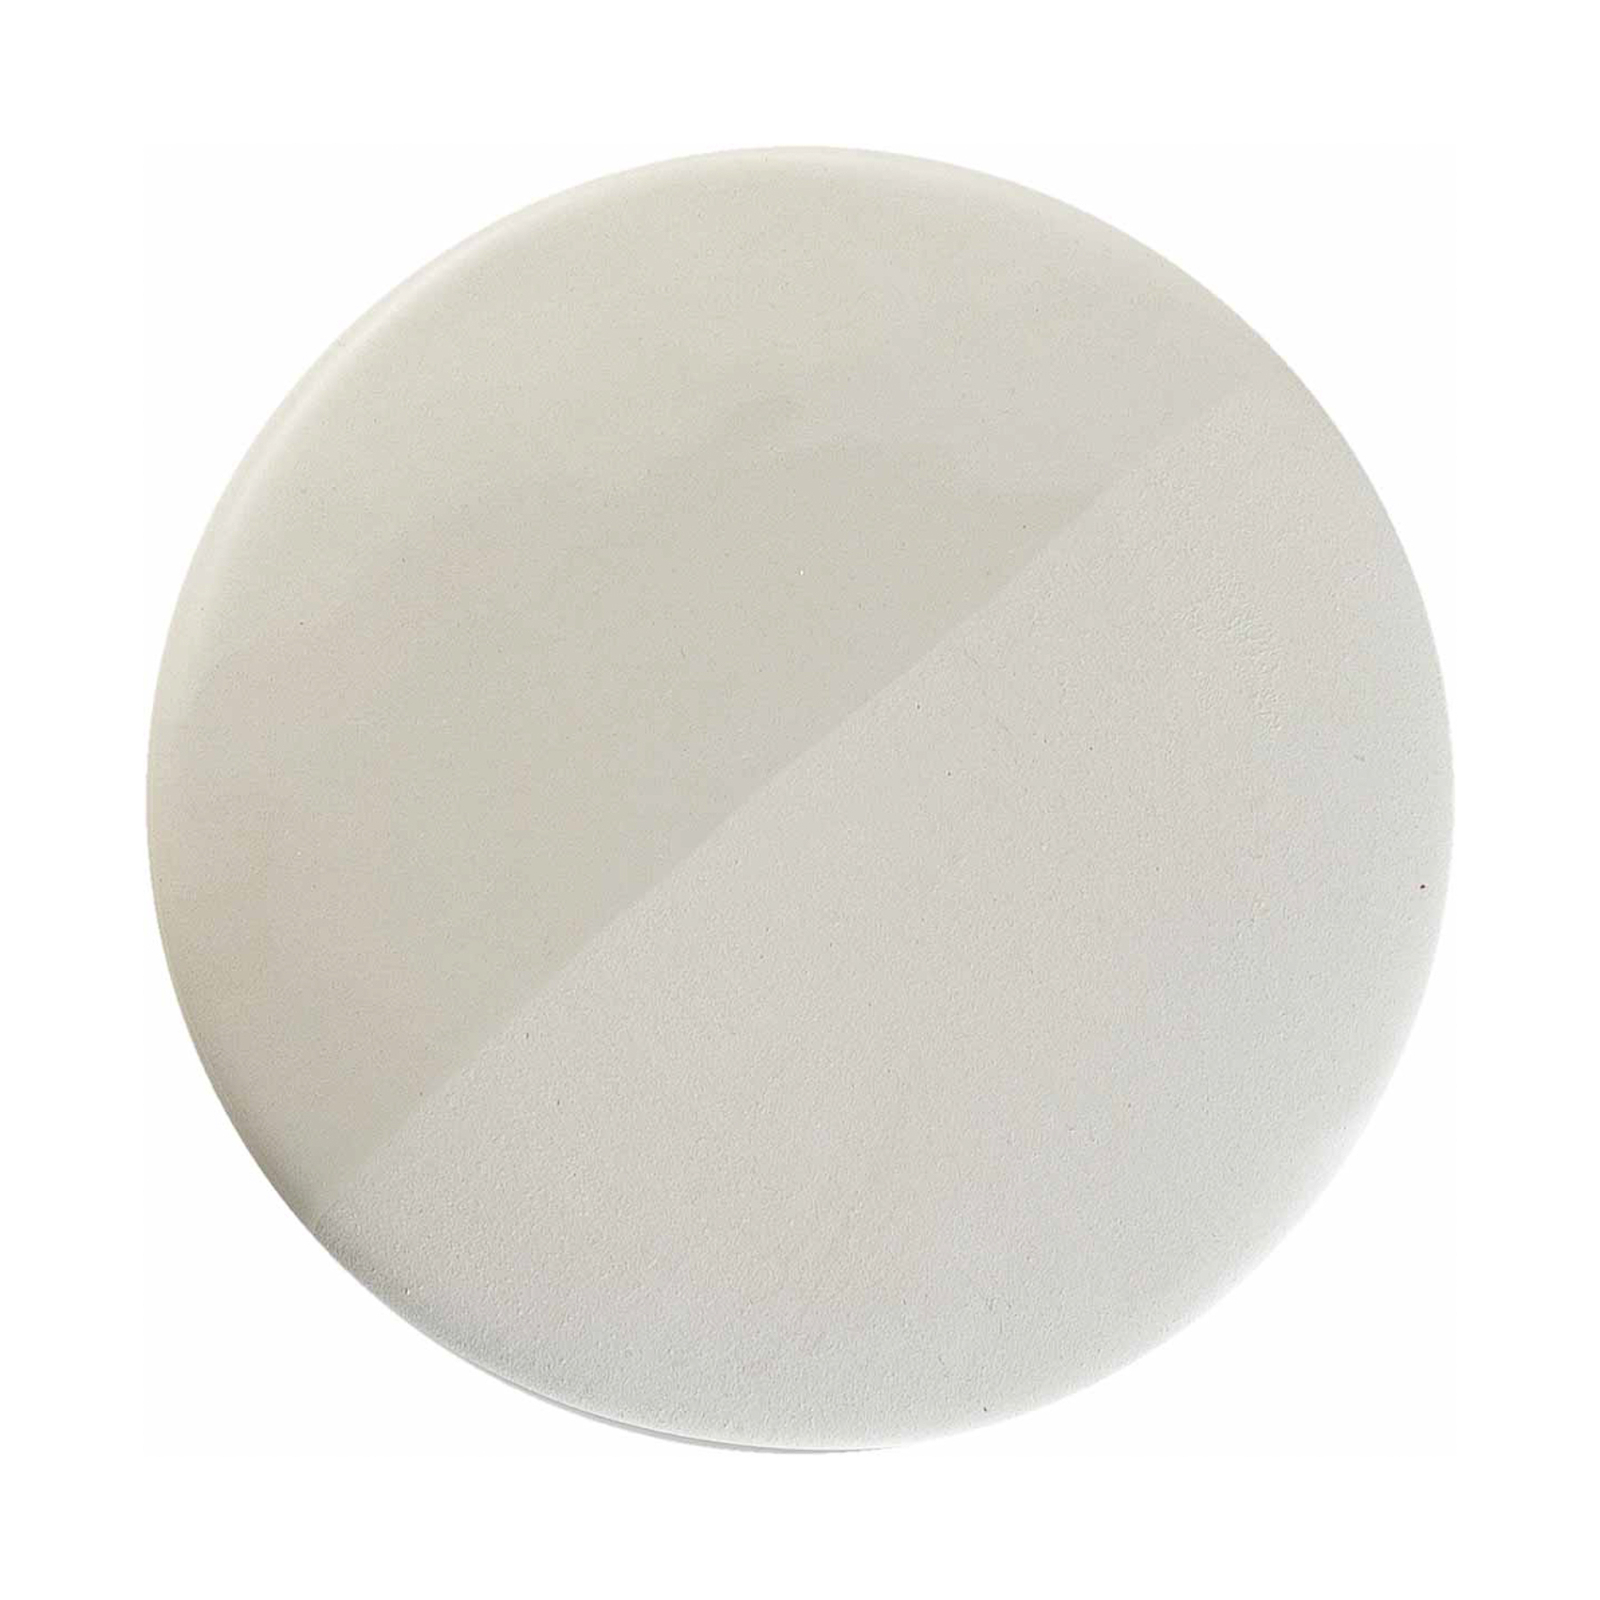 Caxixi-pendel i keramik, hvid